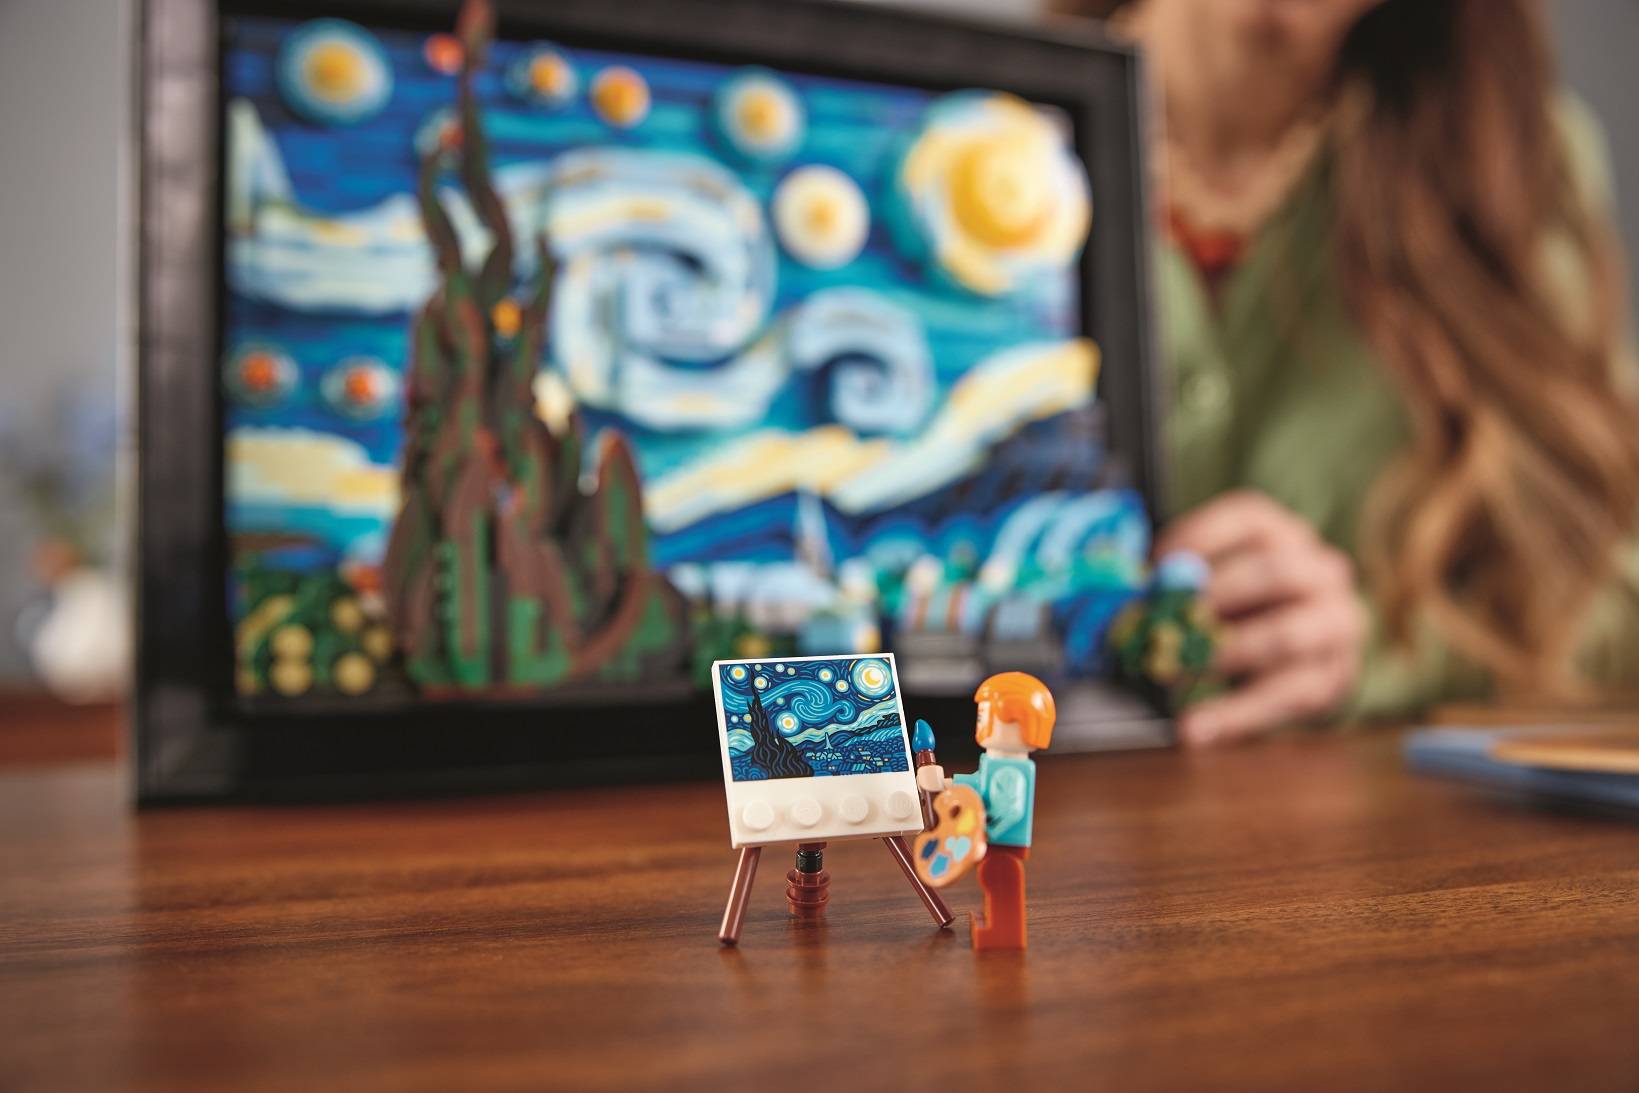 LEGO omaggioa Van Gogh con il nuovo set Notte Stellata Ideas